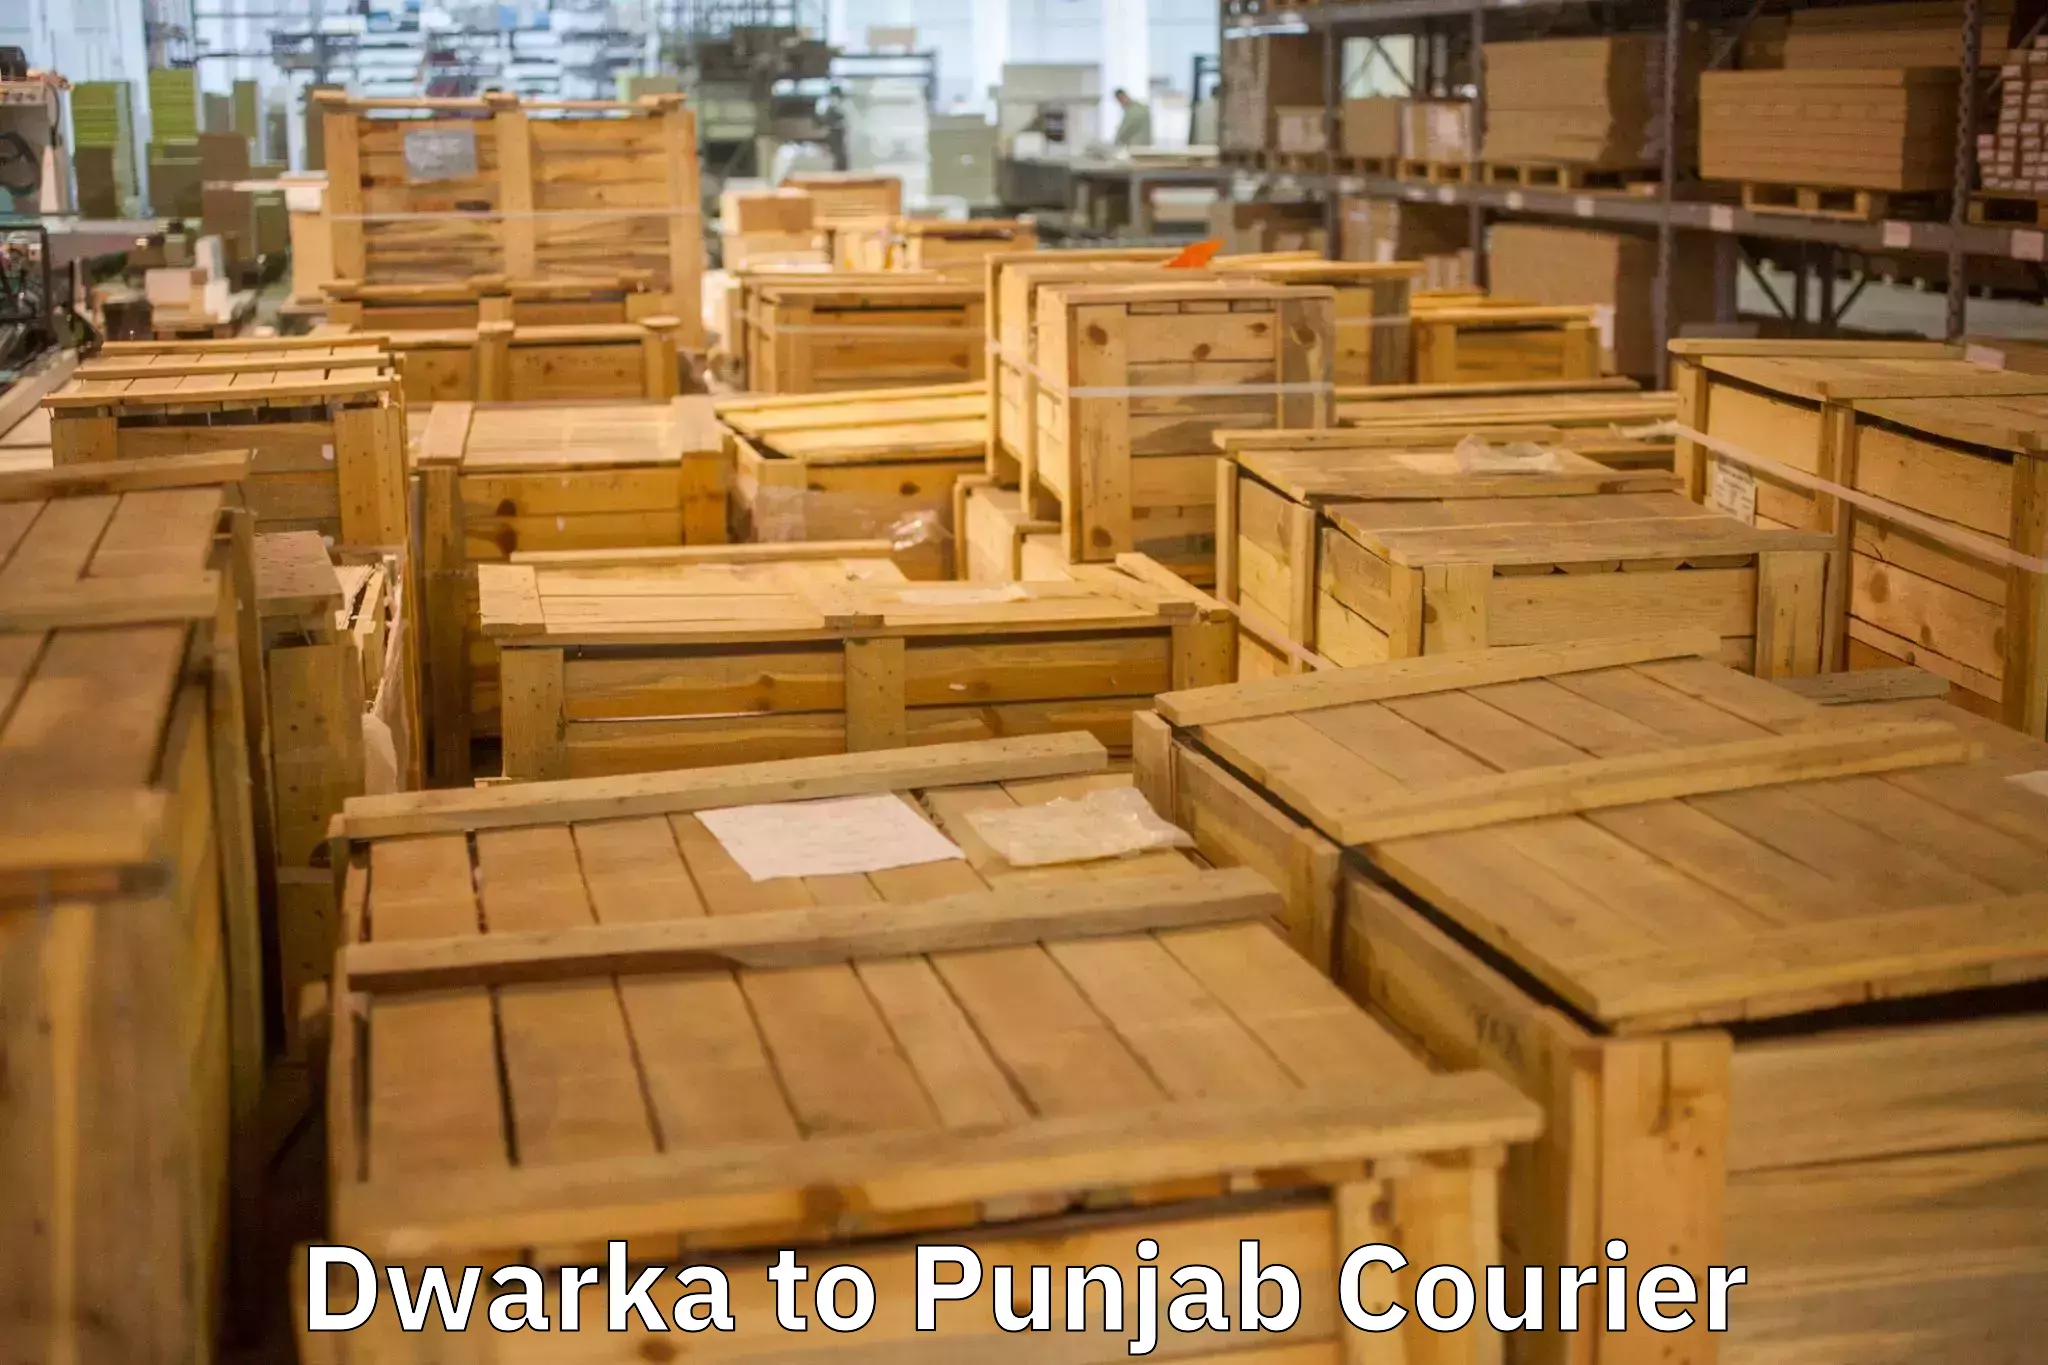 Household goods transport service Dwarka to Jalandhar